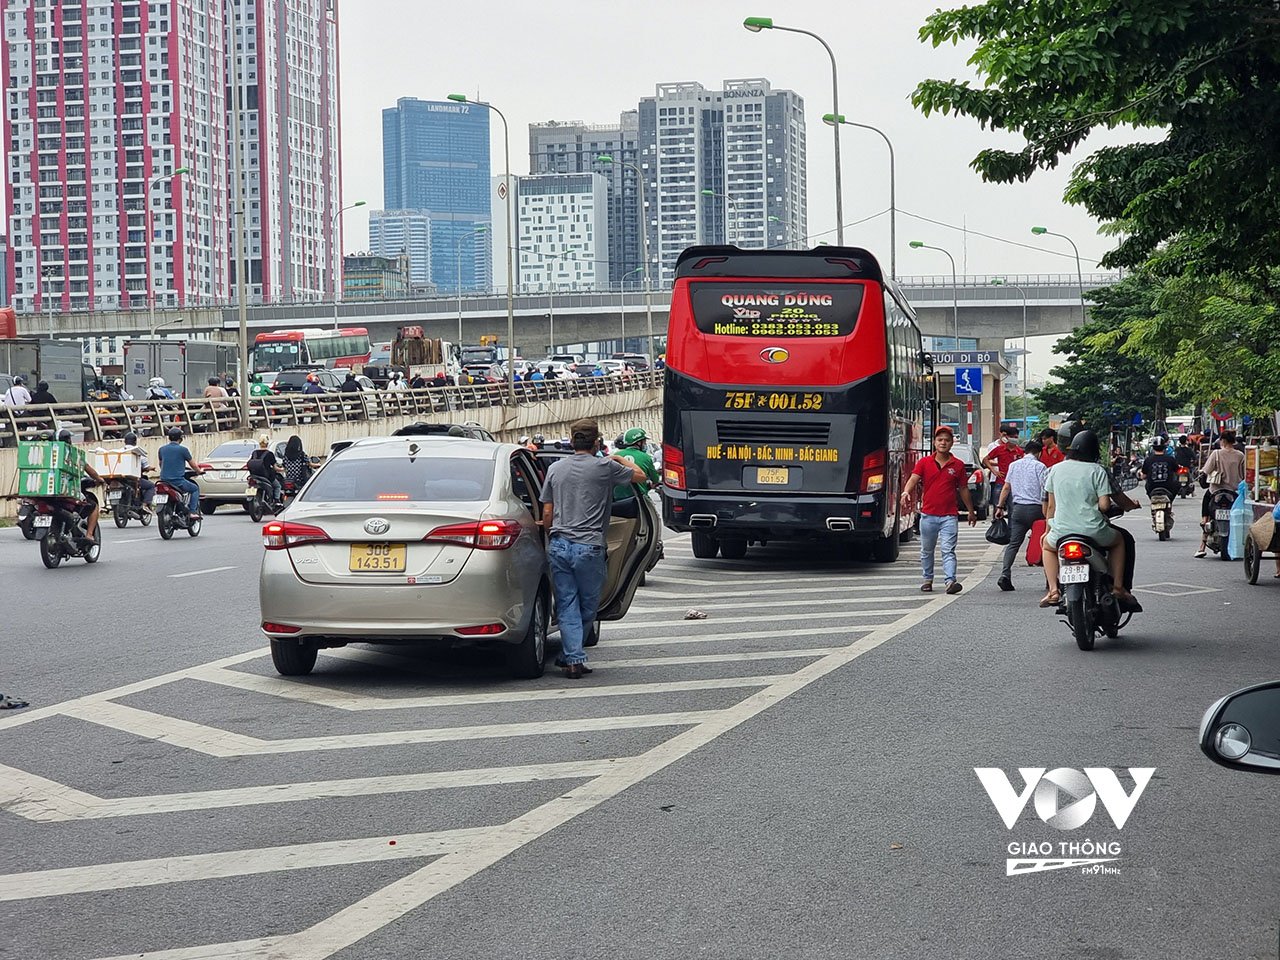 Ngay đầu giờ cao điểm chiều đã xuất hiện nhiều xe khách bắt khách dọc đường trên đường Phạm Hùng hướng trung tâm